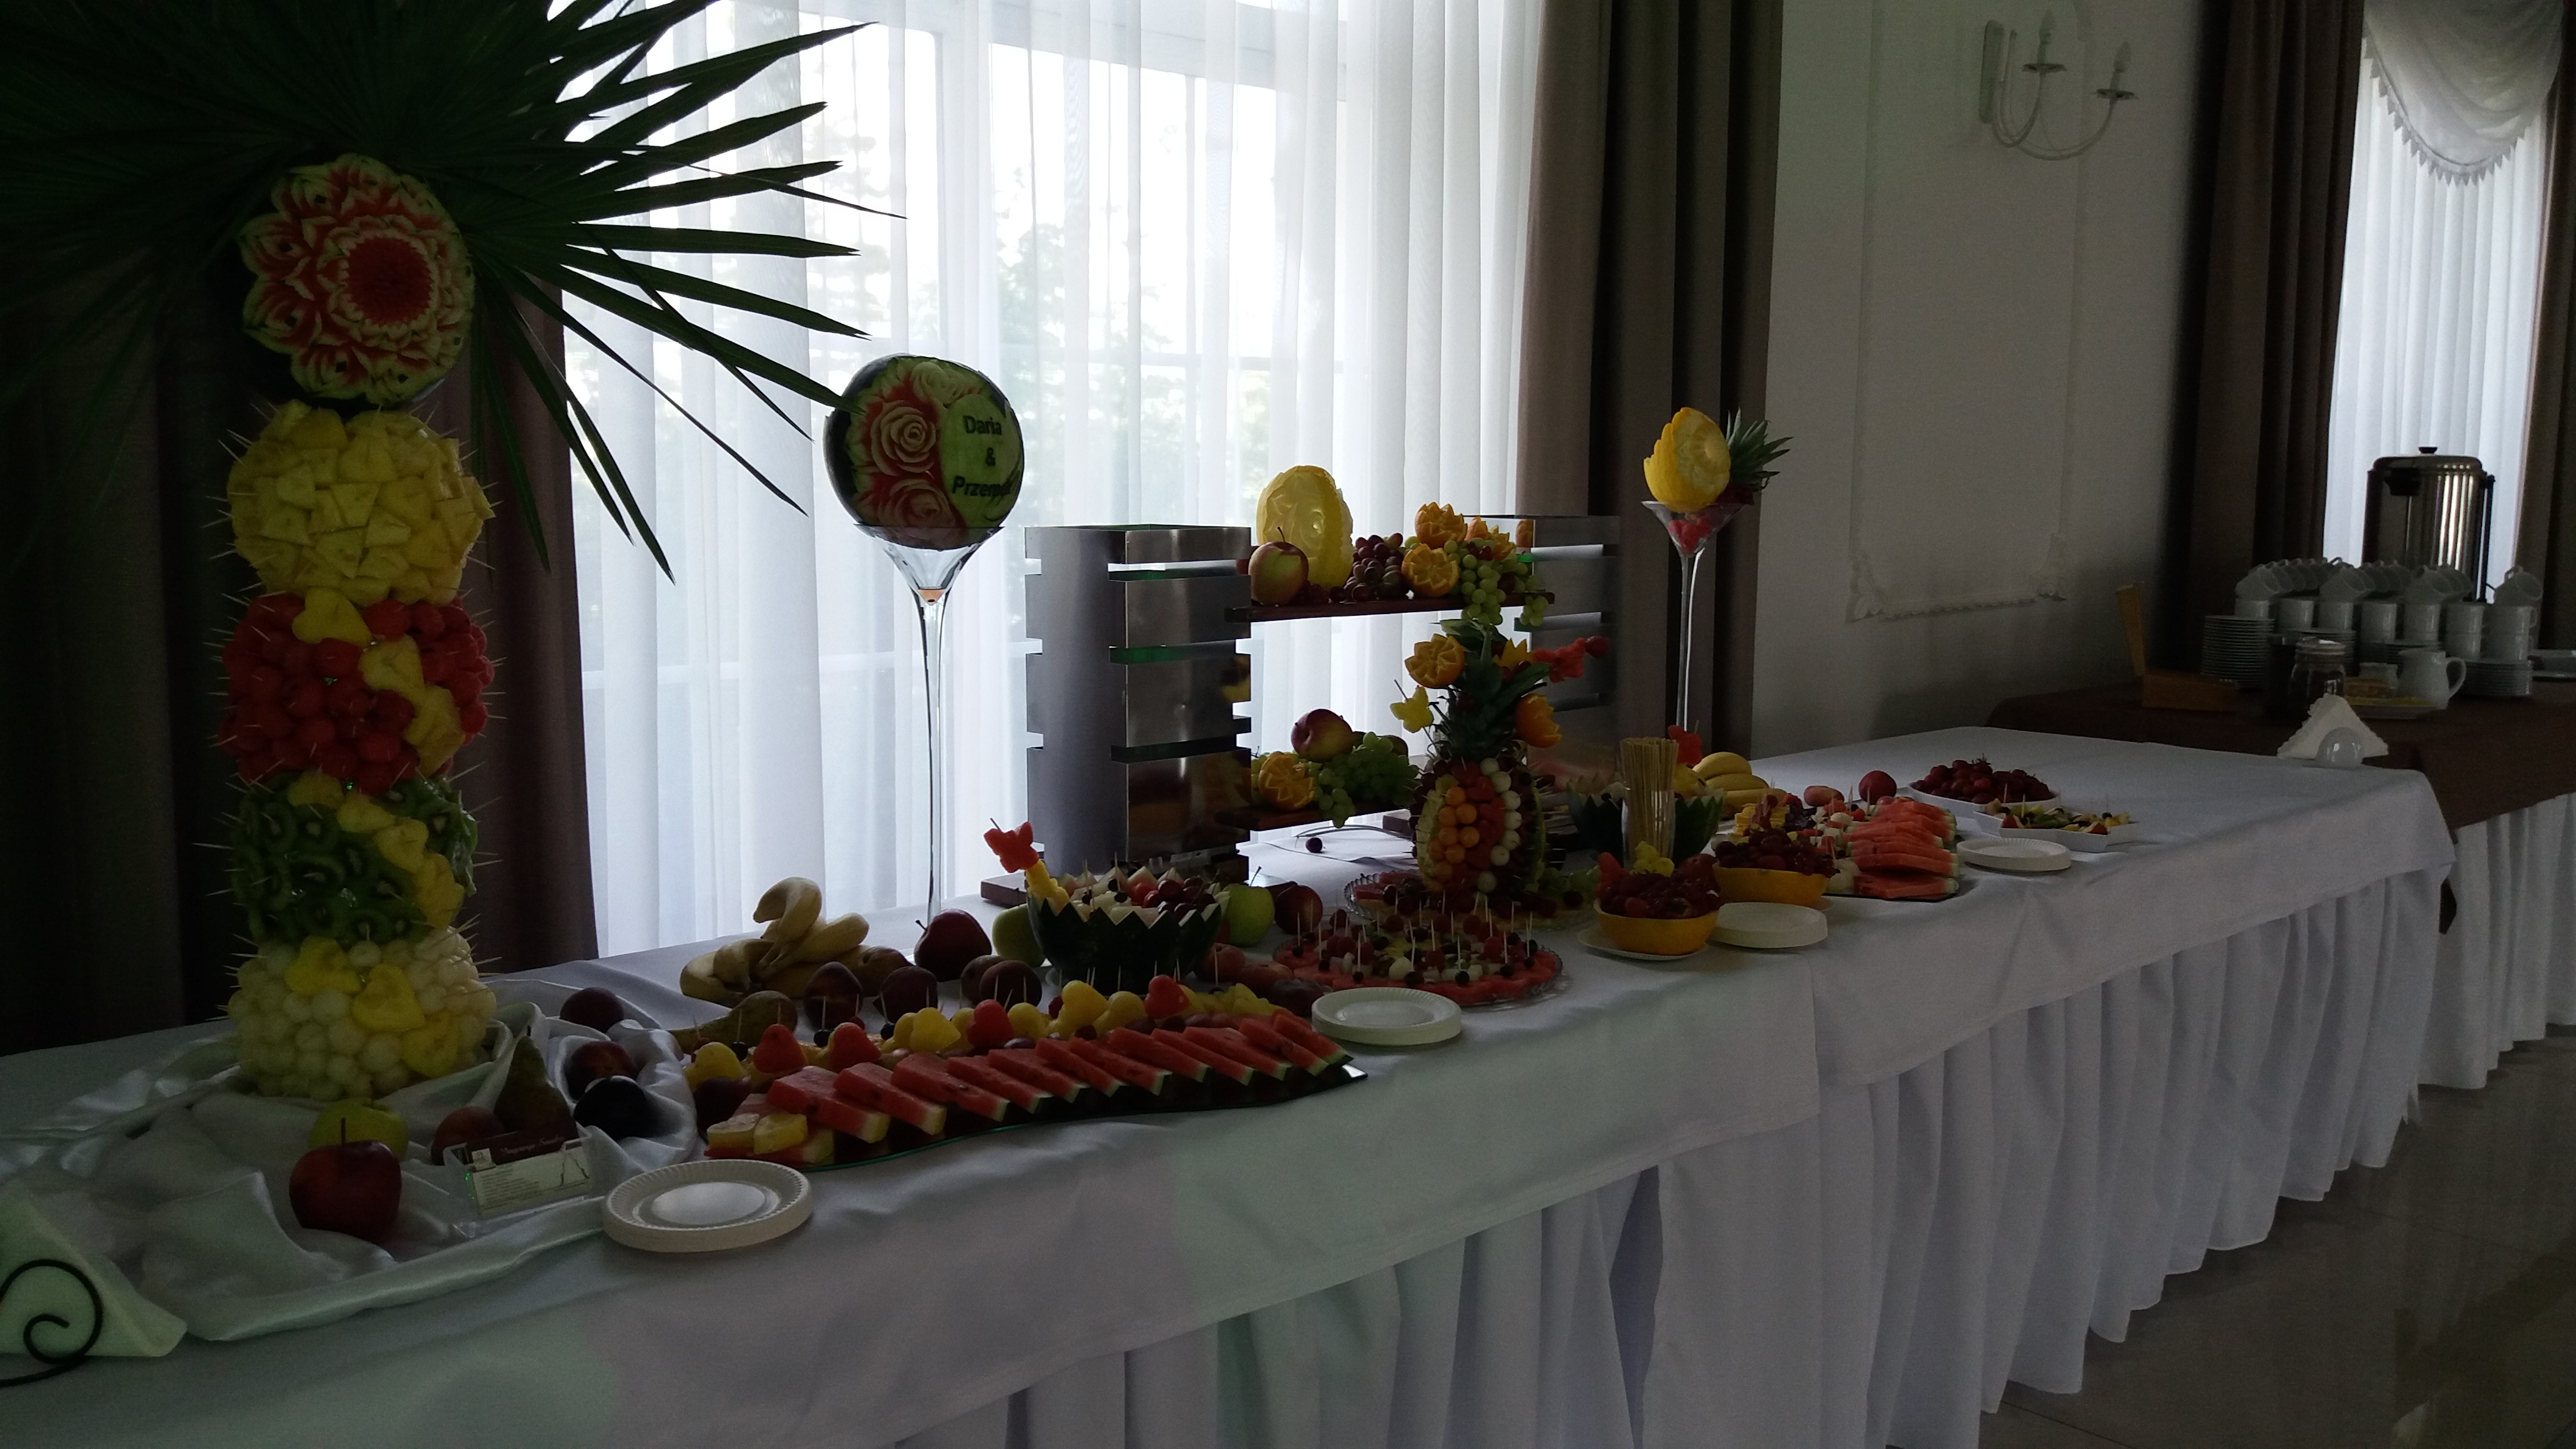 bufet owocowy Zajazd Staropolski, stół z owocami, dekoracje owocowe, owoce na wesele, fruit carving, fruits art, food art,